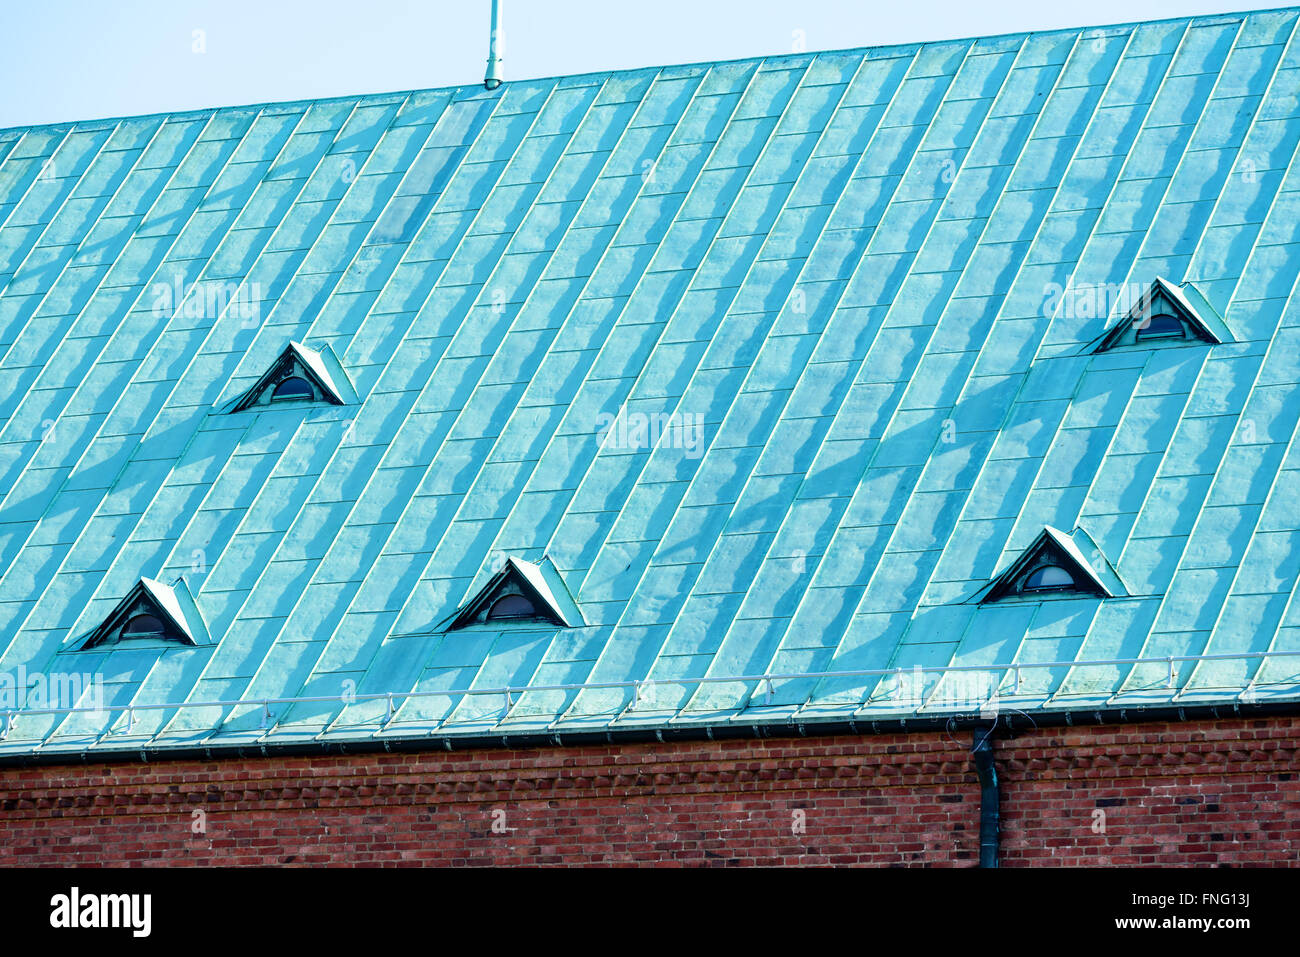 Un toit en cuivre avec des petites fenêtres. Le cuivre est vieux et a oxydé en une couleur verdâtre, donnant le toit une belle patine. Banque D'Images